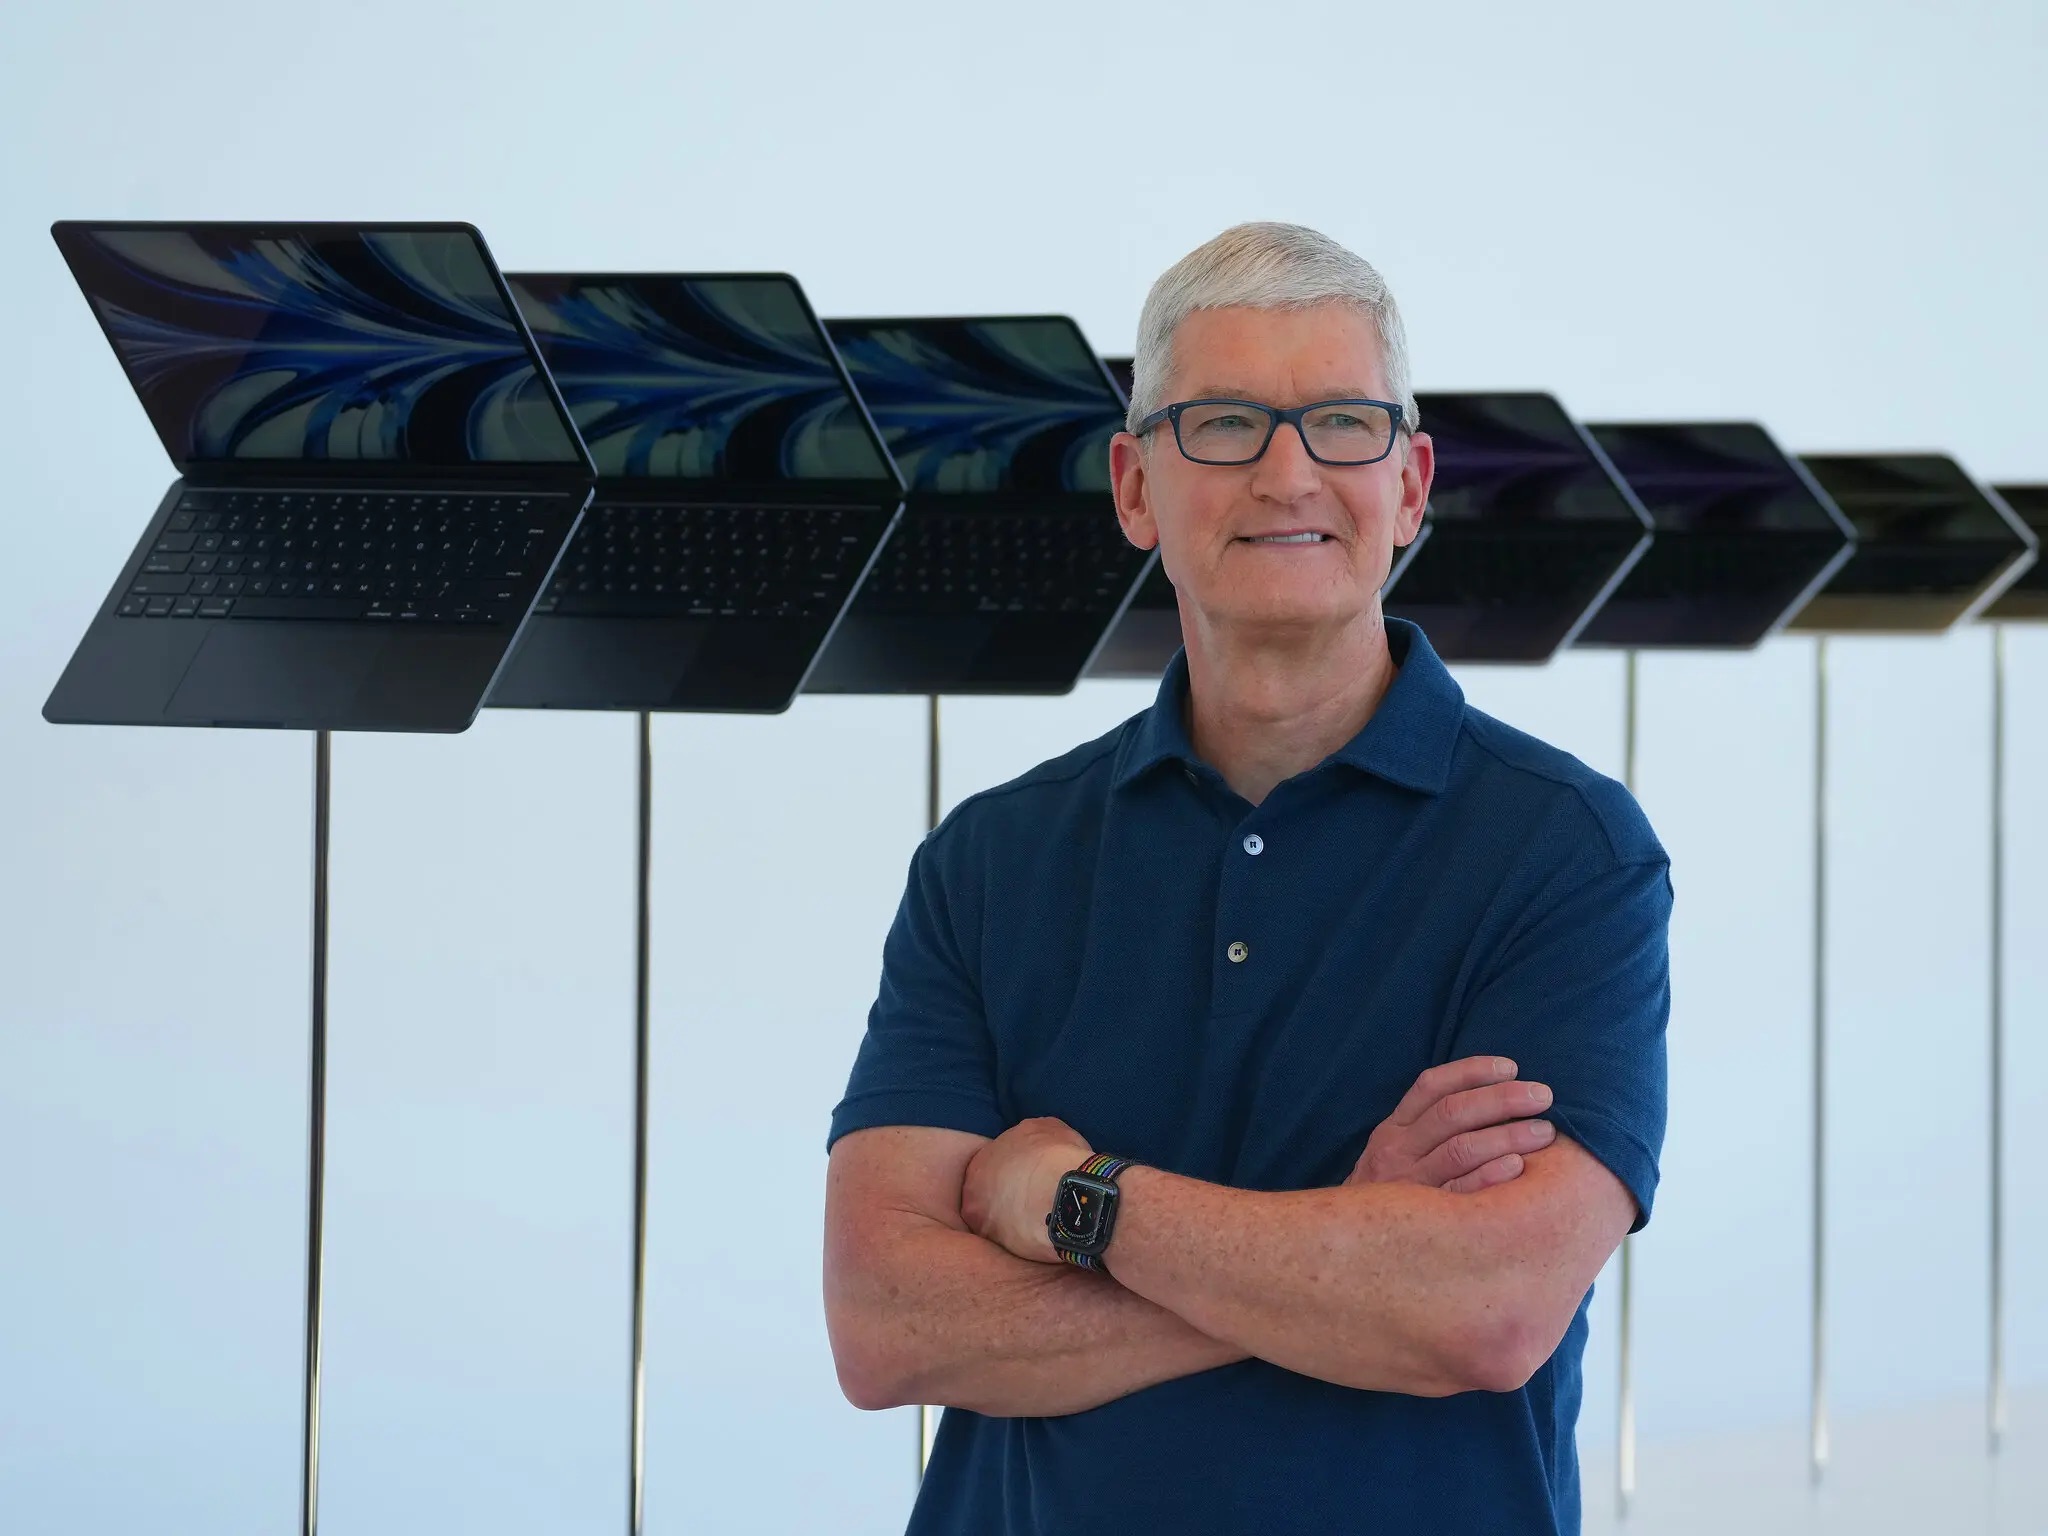 苹果公司首席执行官蒂姆·库克去年说，在不久的将来，“你会想，如果没有AR技术，你是如何生活的，就像今天你想： 没有互联网，像我这样的人是怎么长大的？”